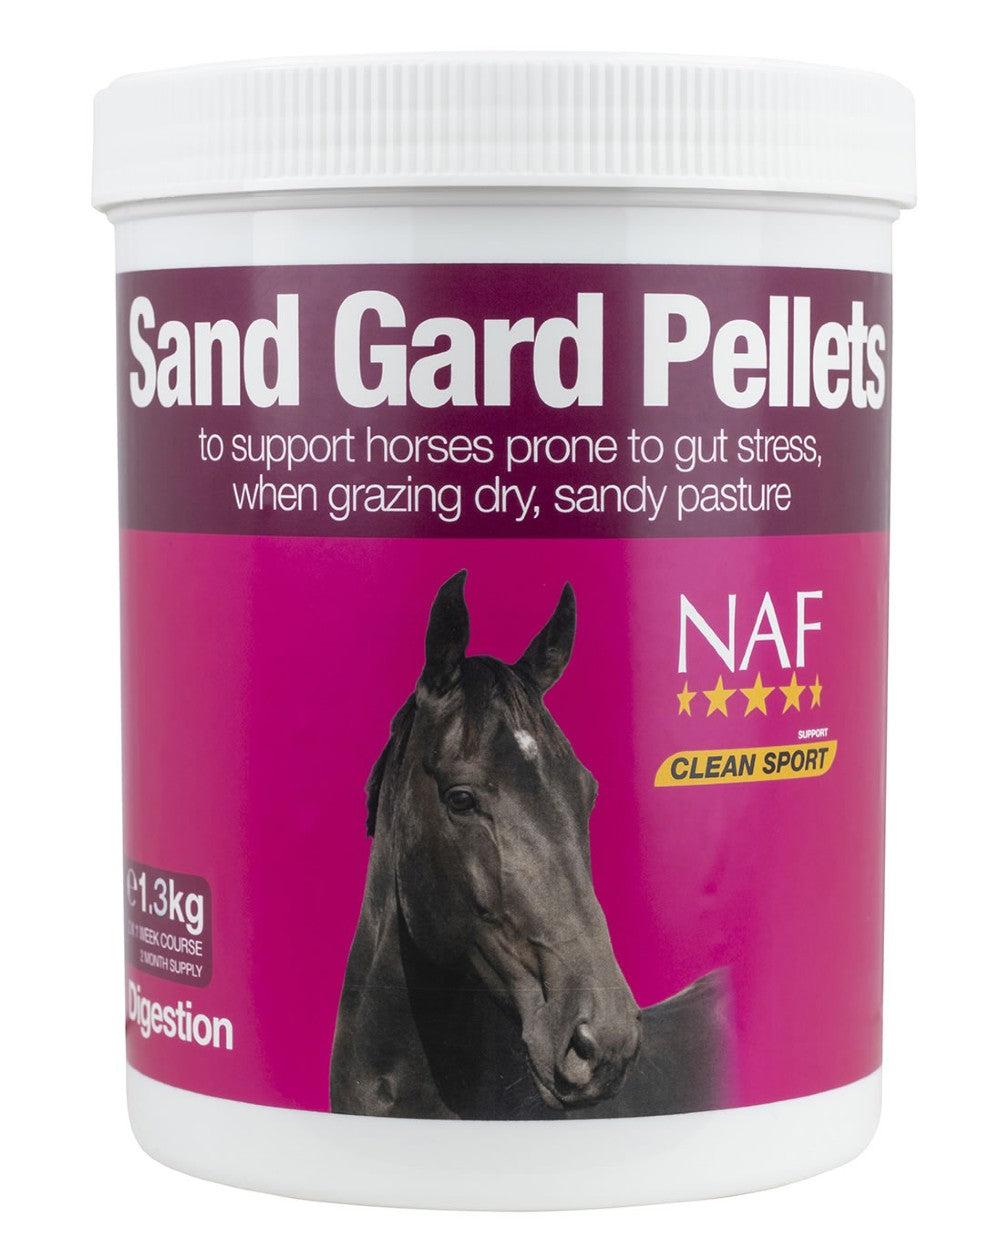 NAF Sand Gard Pellets 1.3kg on white background